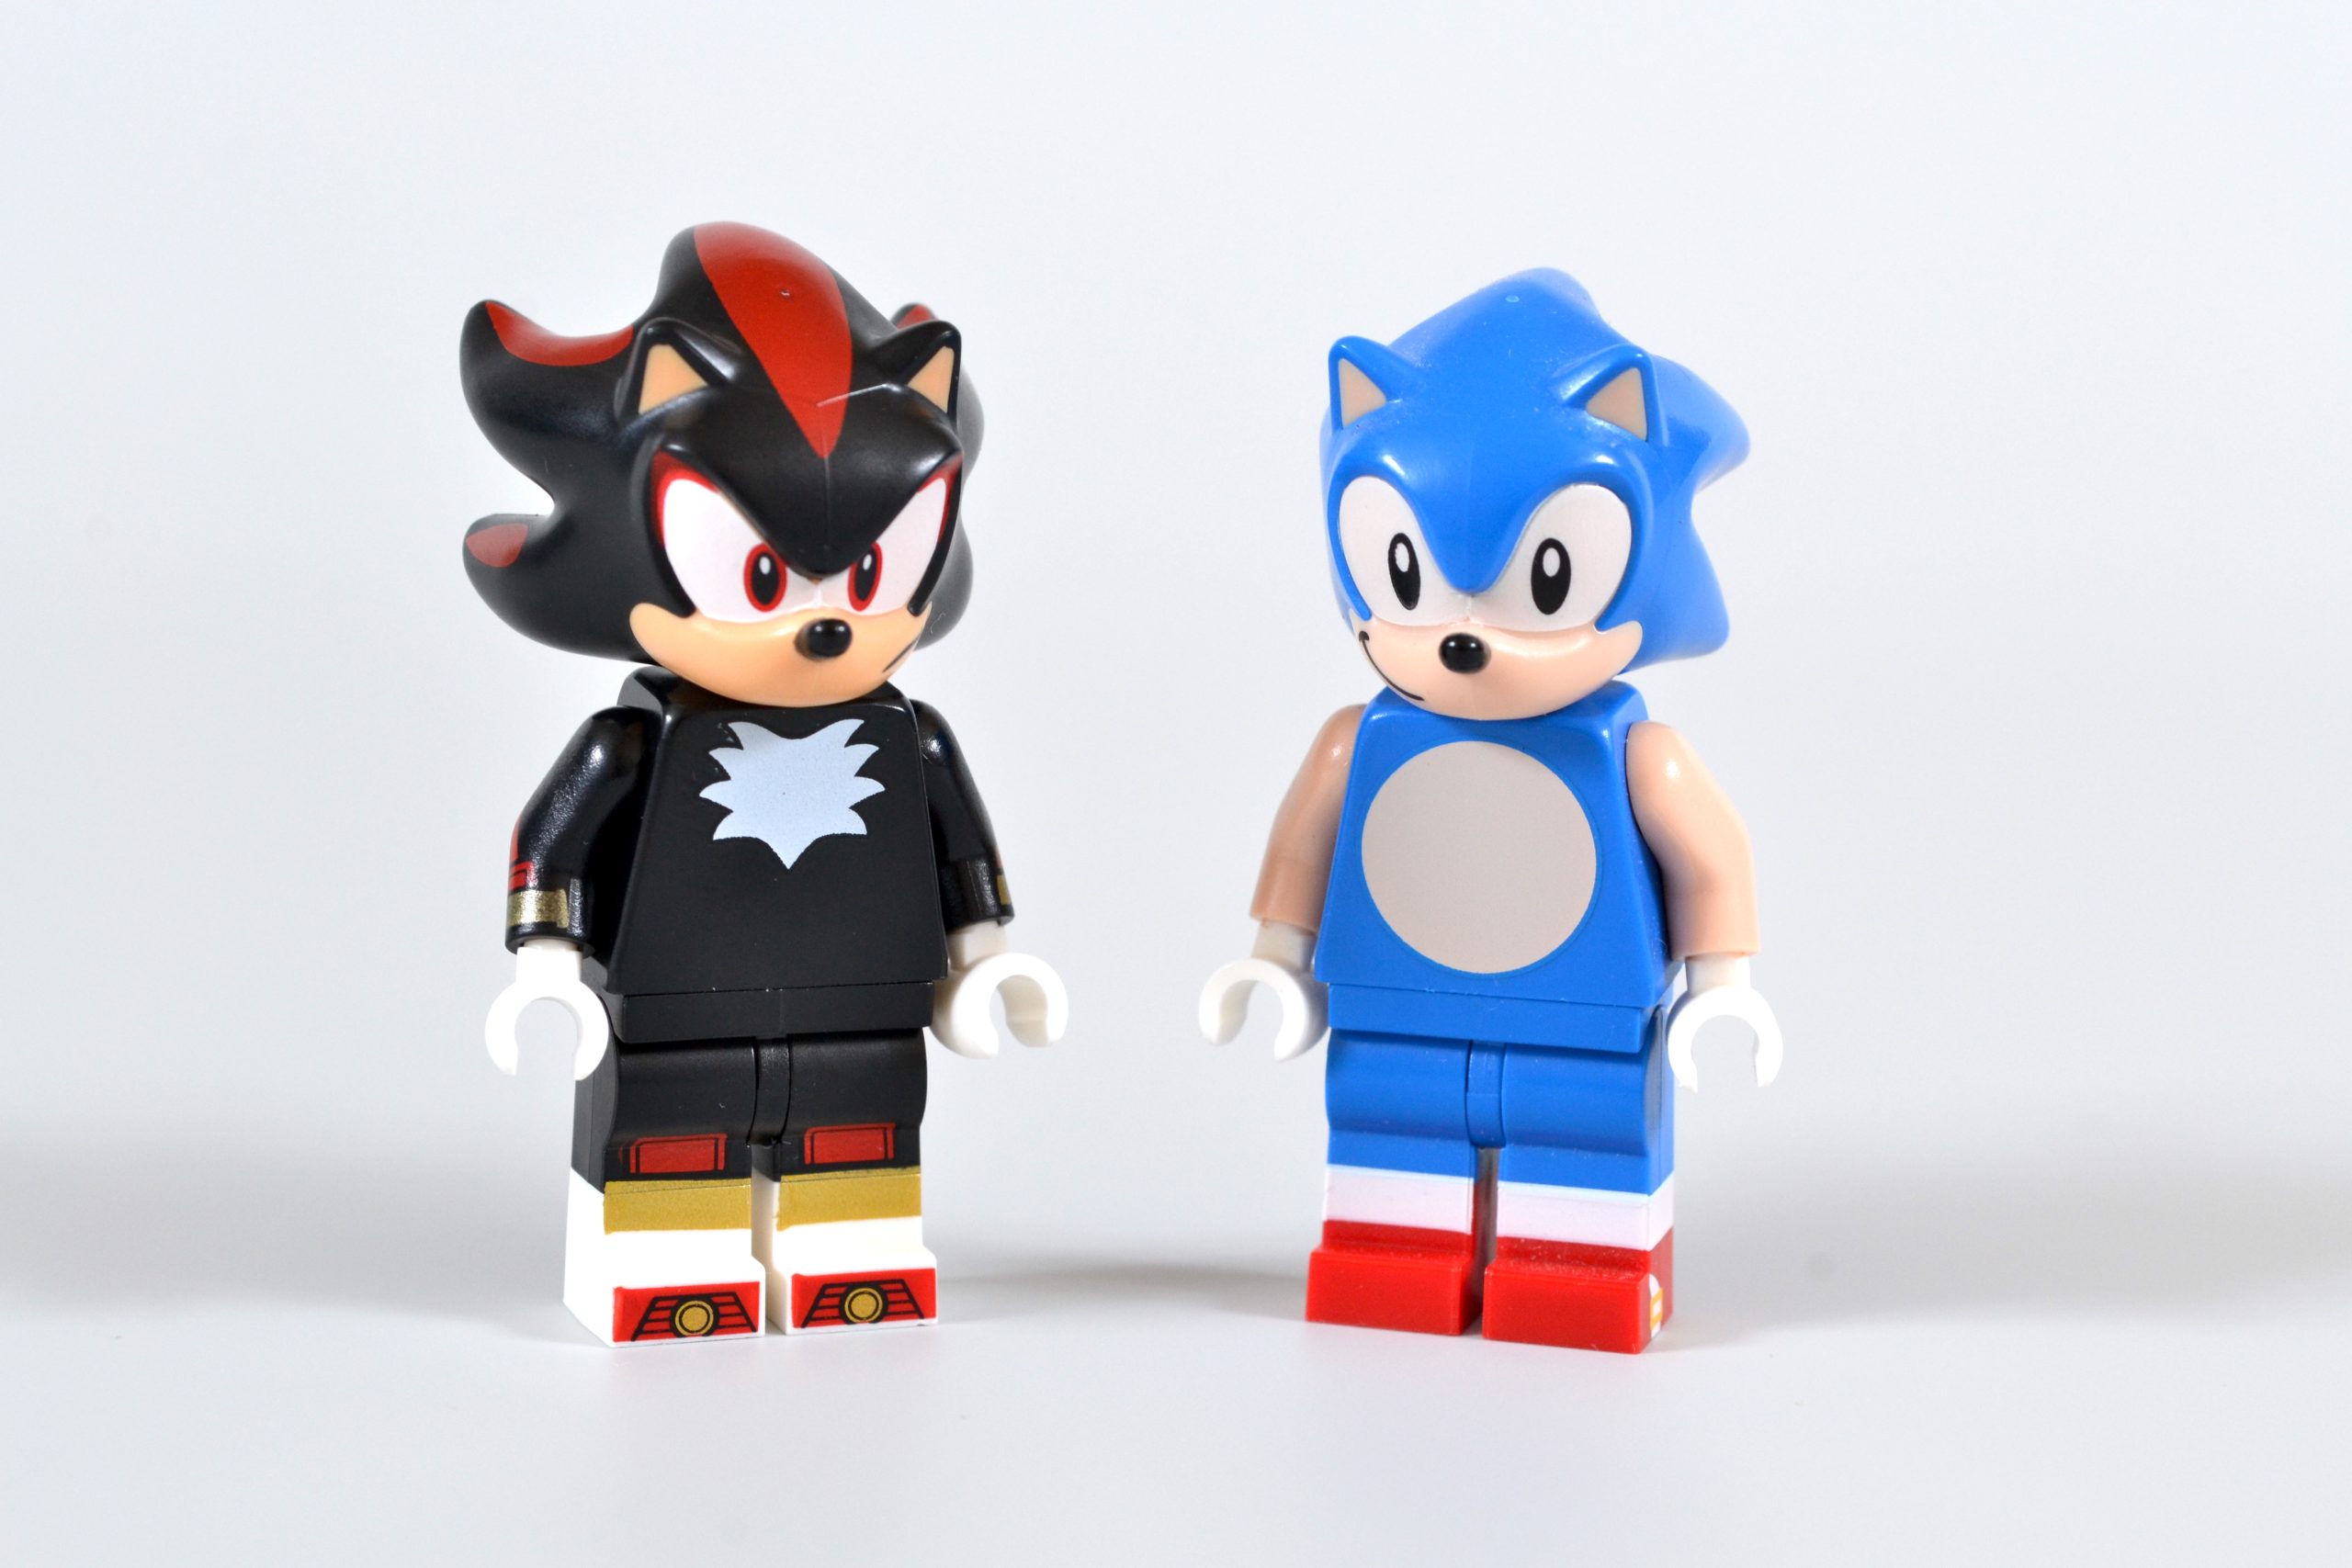 ▻ Review: LEGO Sonic the Hedgehog 76995 Shadow's Escape - HOTH BRICKS